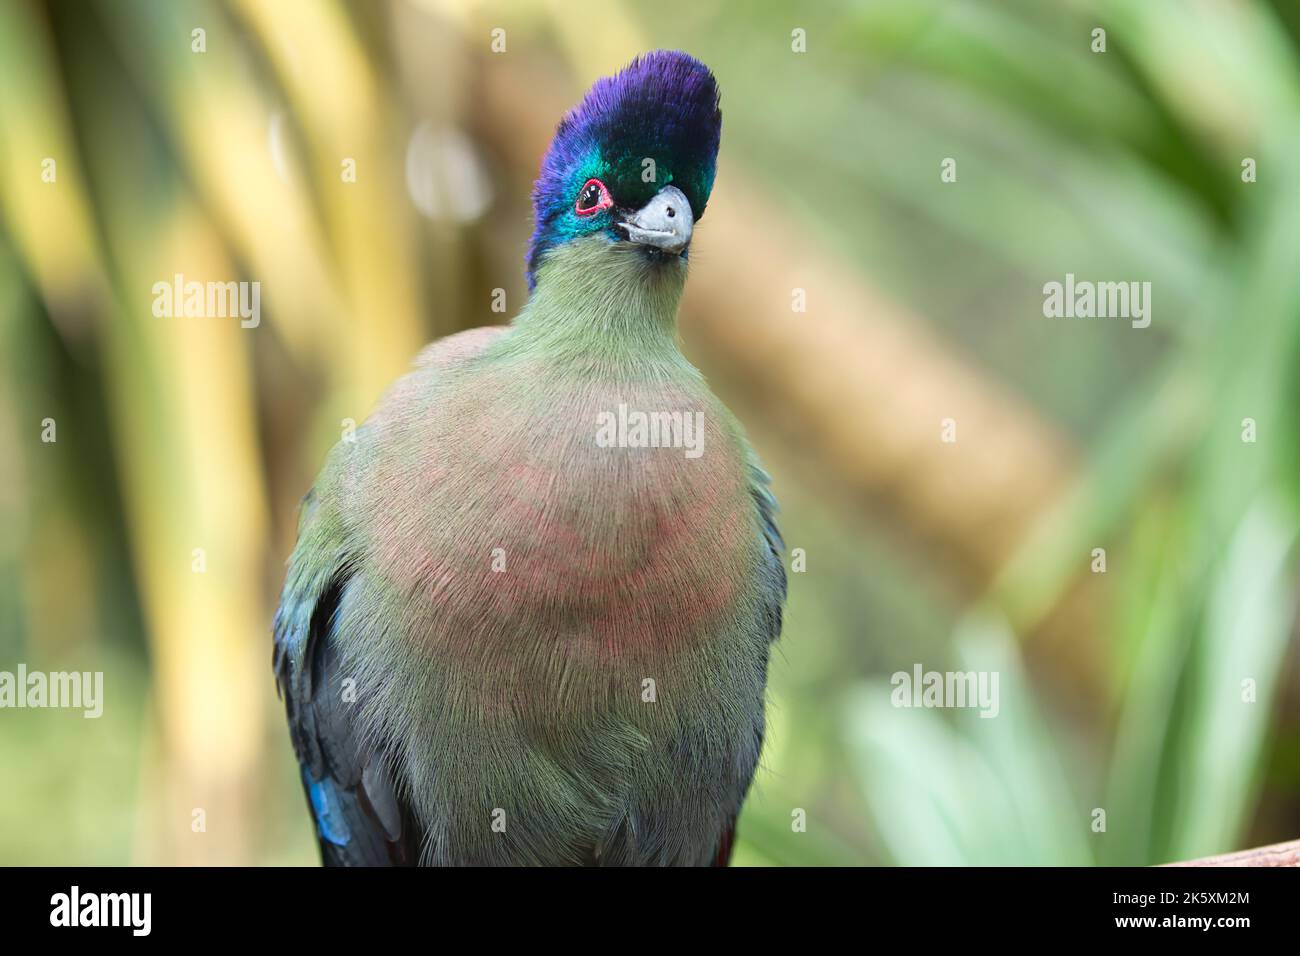 Il turaco purple-crested è l'uccello nazionale del Regno dello Swaziland. Un voluminoso uccello iridescente rivestito in viola profondo, blu, verde e verde oliva lavato wi Foto Stock